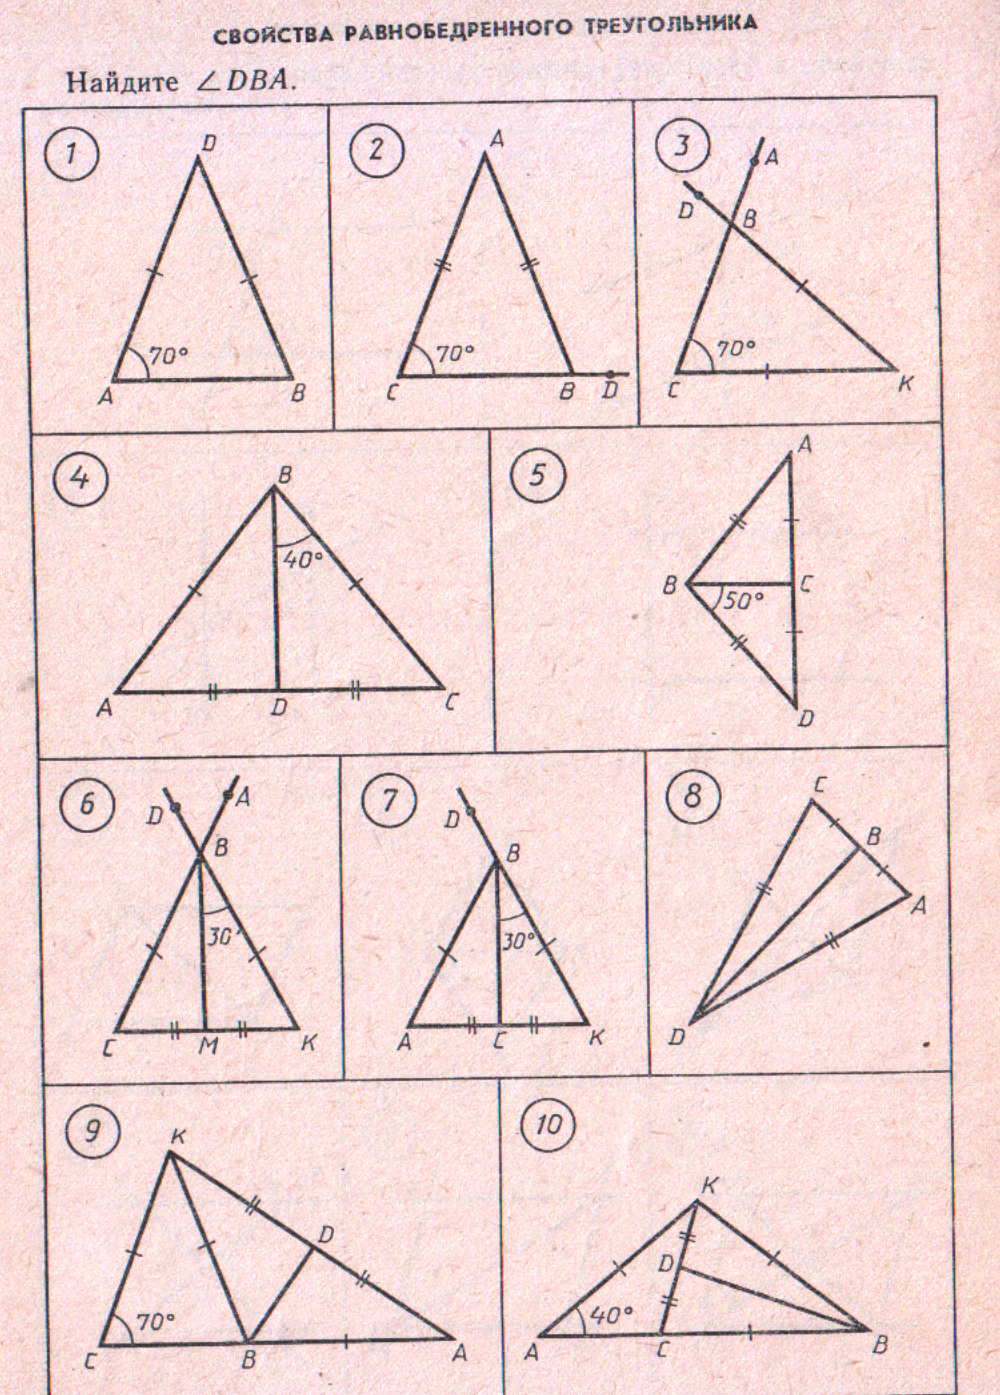 Задачи на готовых чертежах треугольники. Равнобедренный треугольник задачи на готовых чертежах 7. Равнобедренный треугольник задачи на готовых чертежах 7 класс. Задачи на равнобедренный треугольник 7 класс по готовым чертежам. Свойства равнобедренного треугольника 7 класс на готовых чертежах.